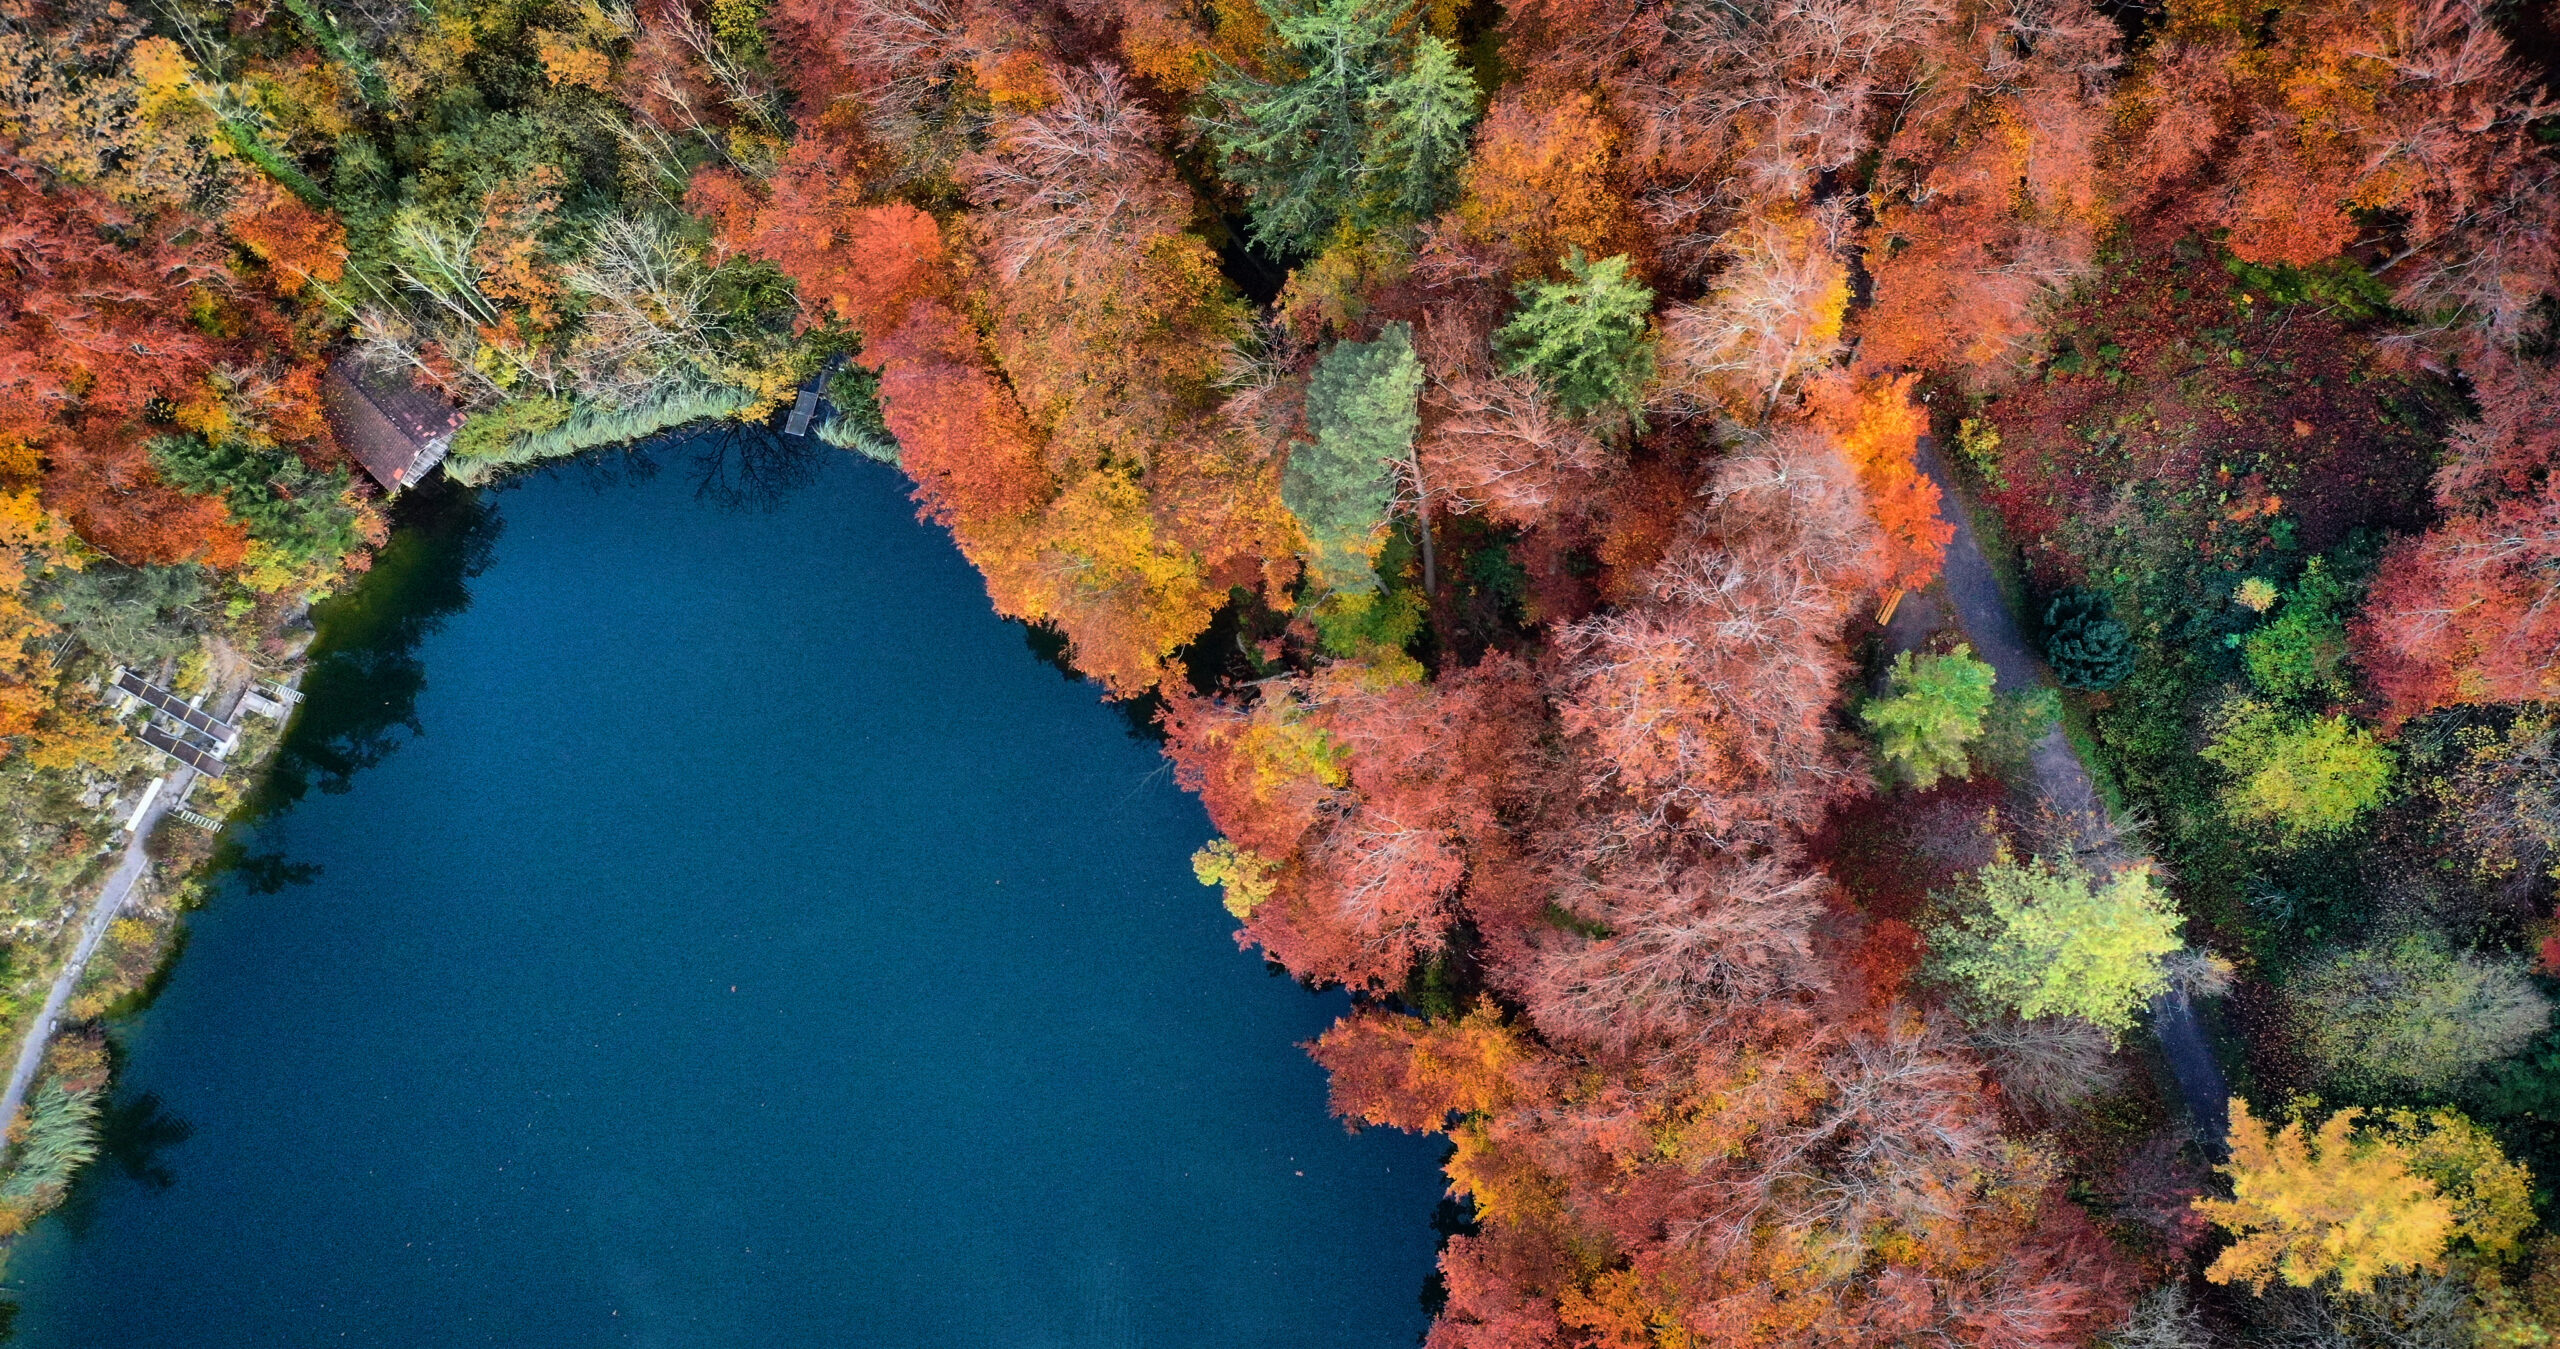 Sevenworld - Luftaufnahme im Herbst von einem Bergsee in Ringgenberg